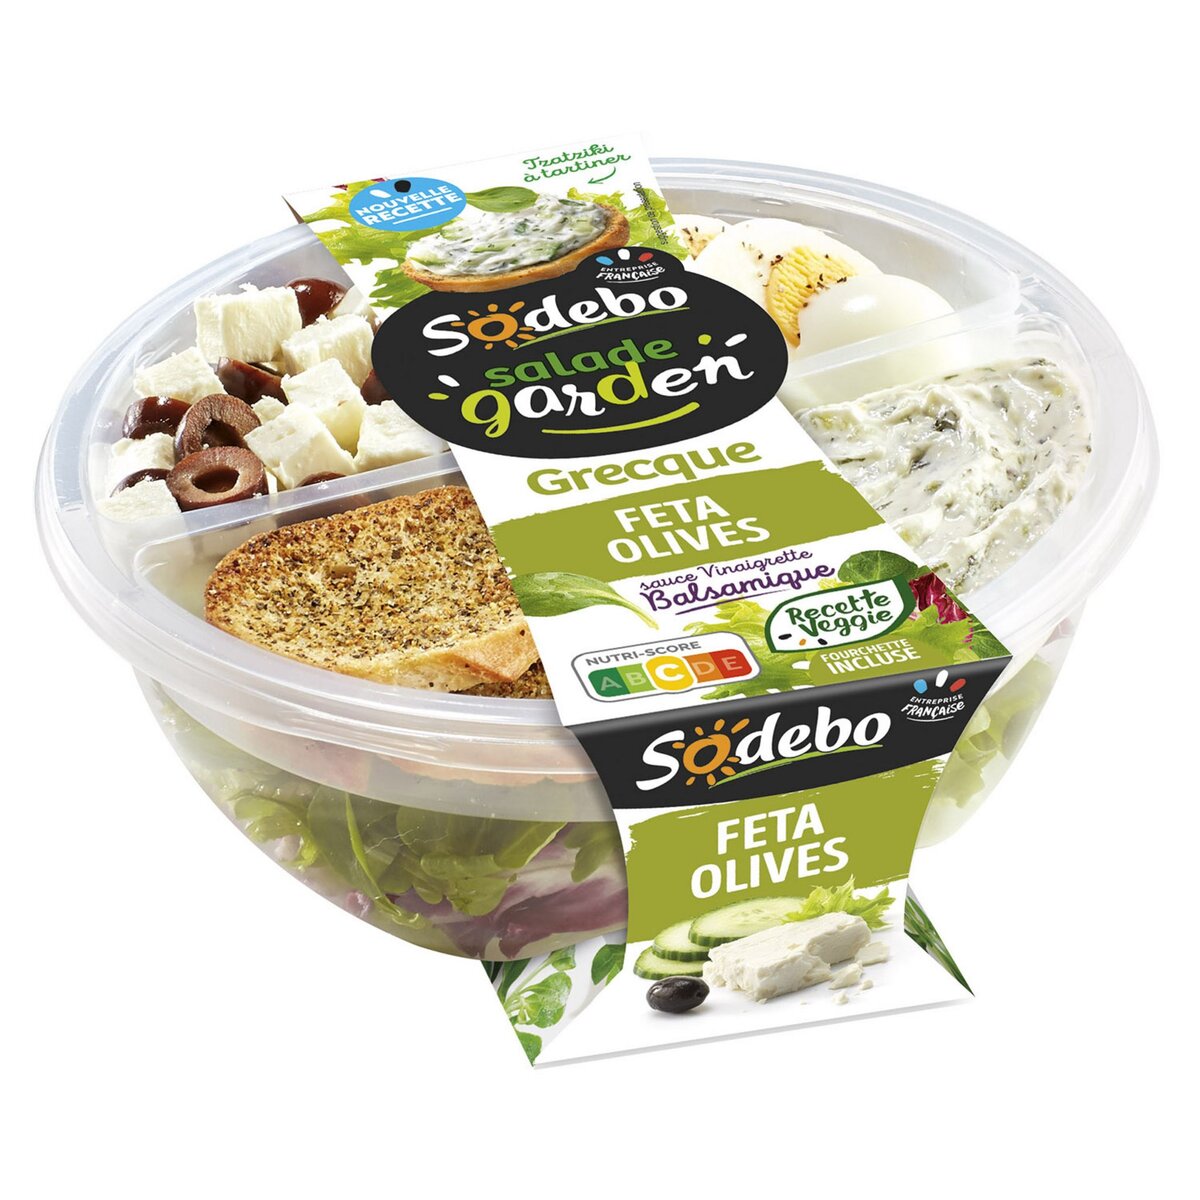 SODEBO Salade garden veggie façon grecque 1 portion 240g